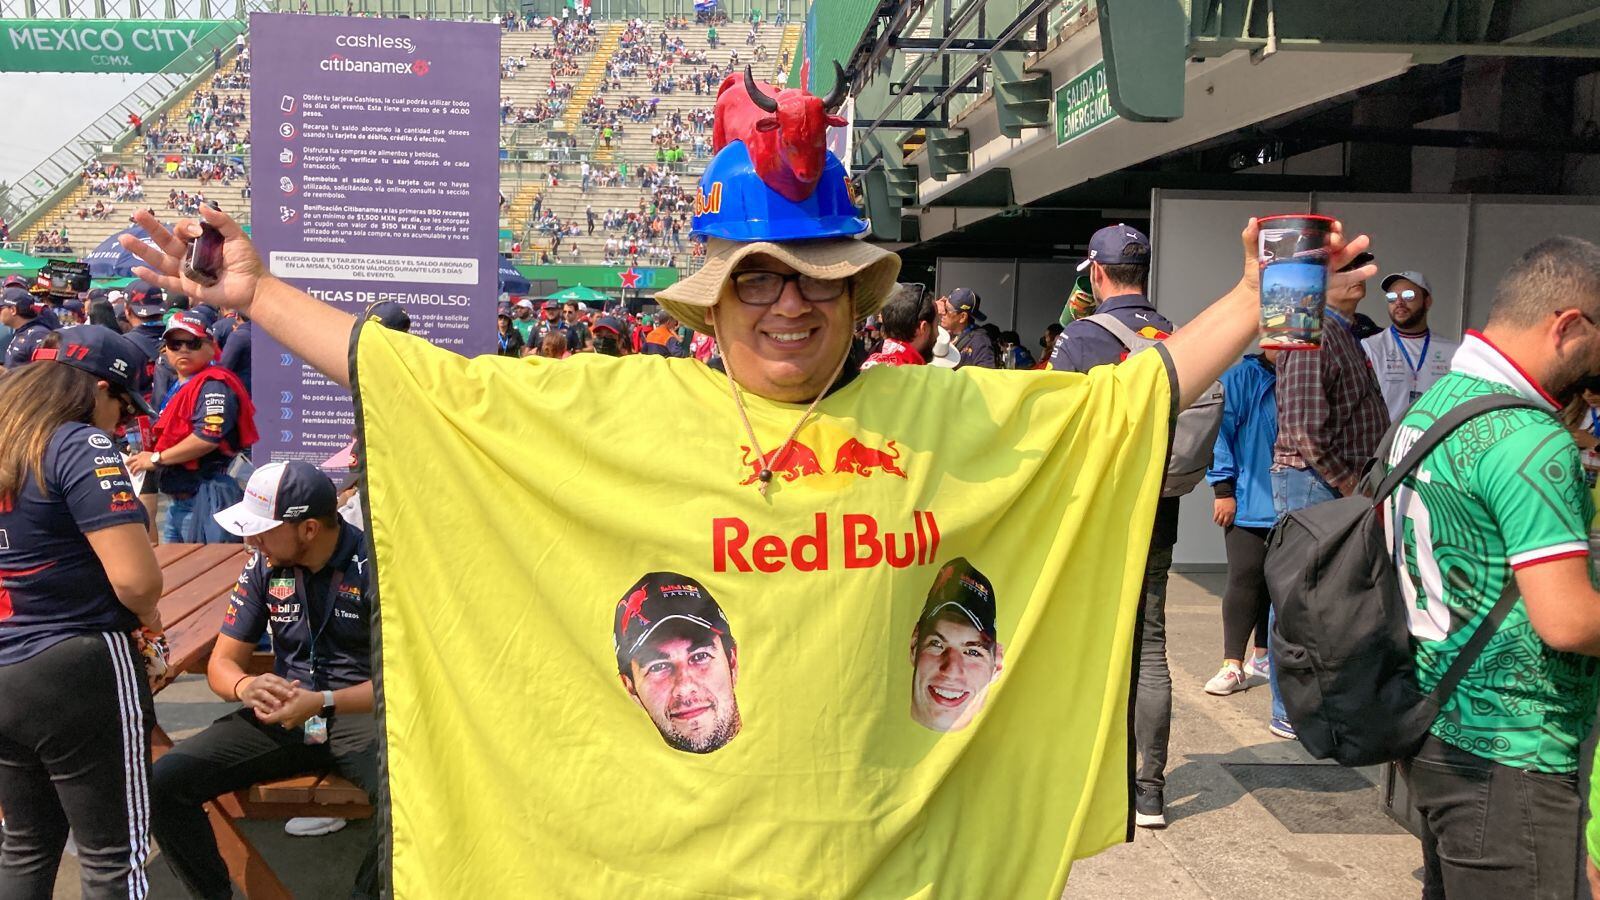 Hay fanáticos que llegaron totalmente tematizados con los colores de Red Bull. (Foto: Especial)